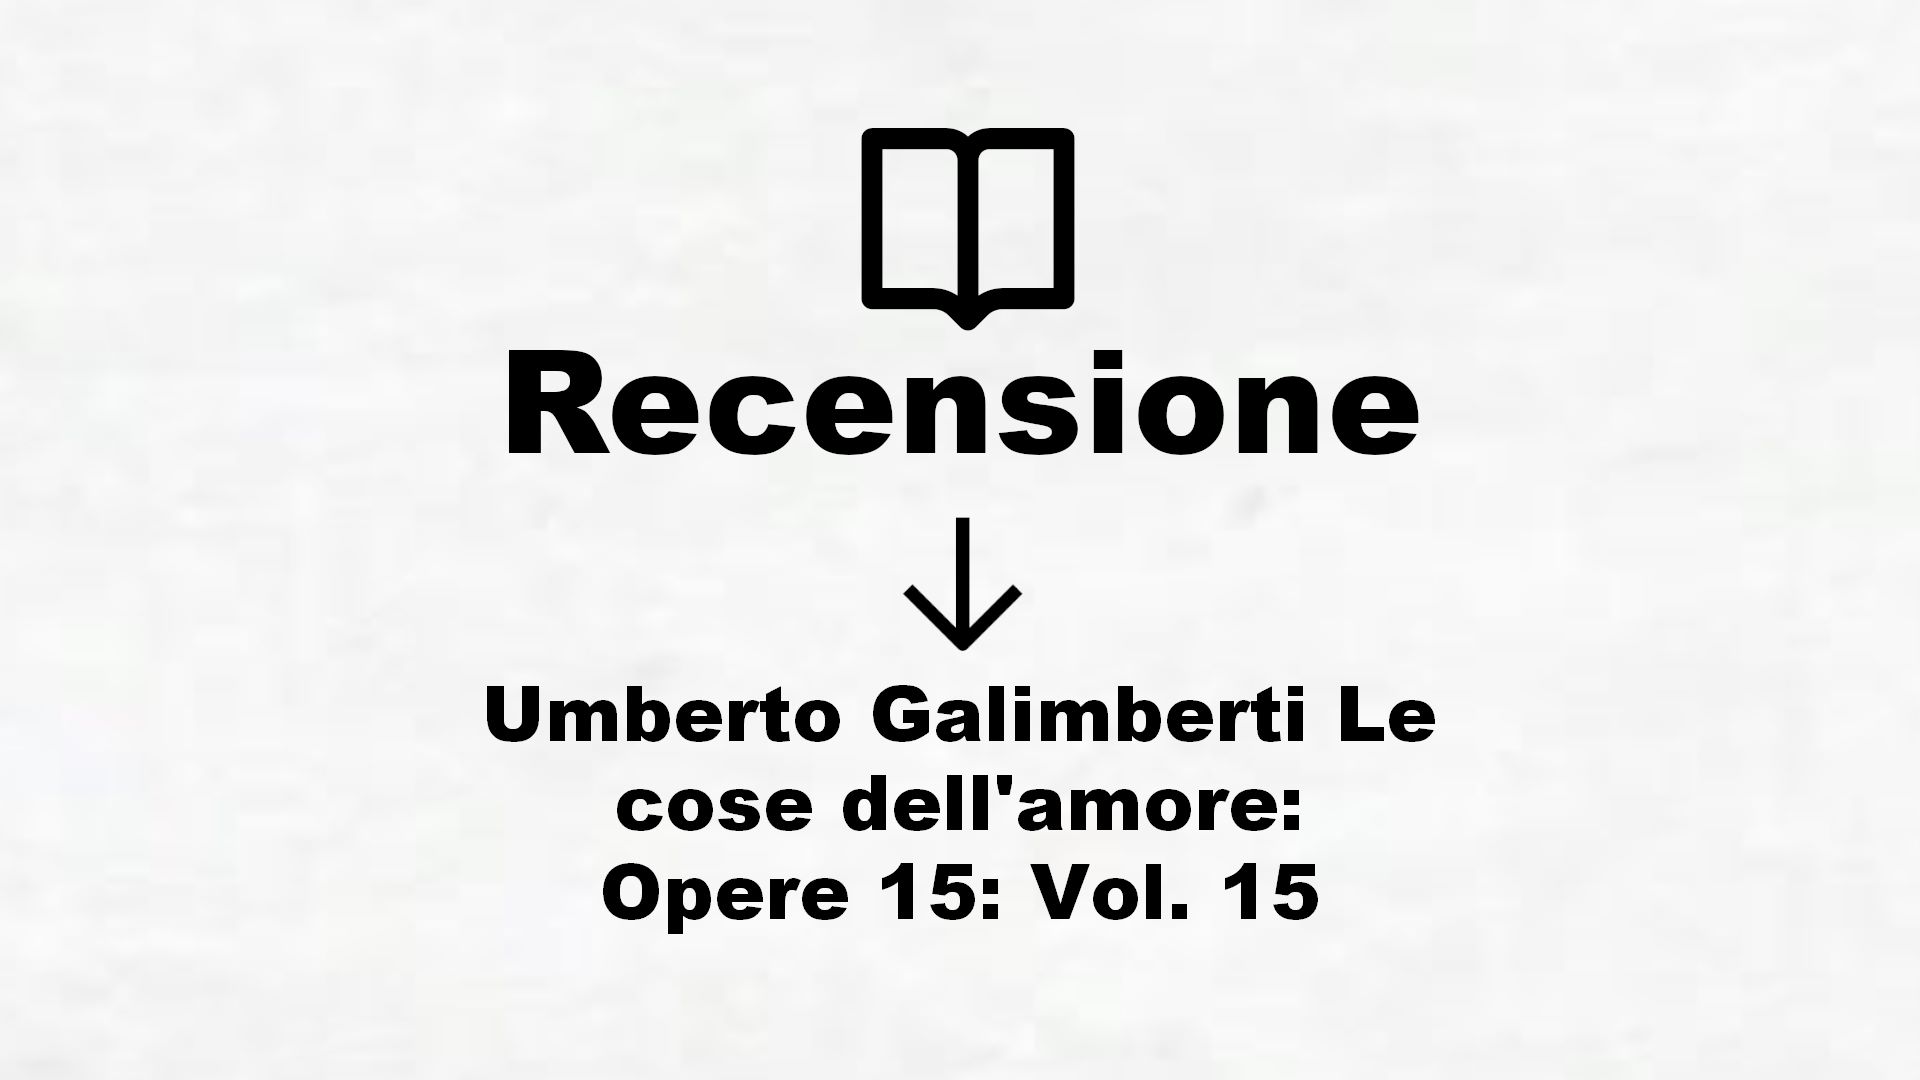 Umberto Galimberti Le cose dell’amore: Opere 15: Vol. 15 – Recensione Libro